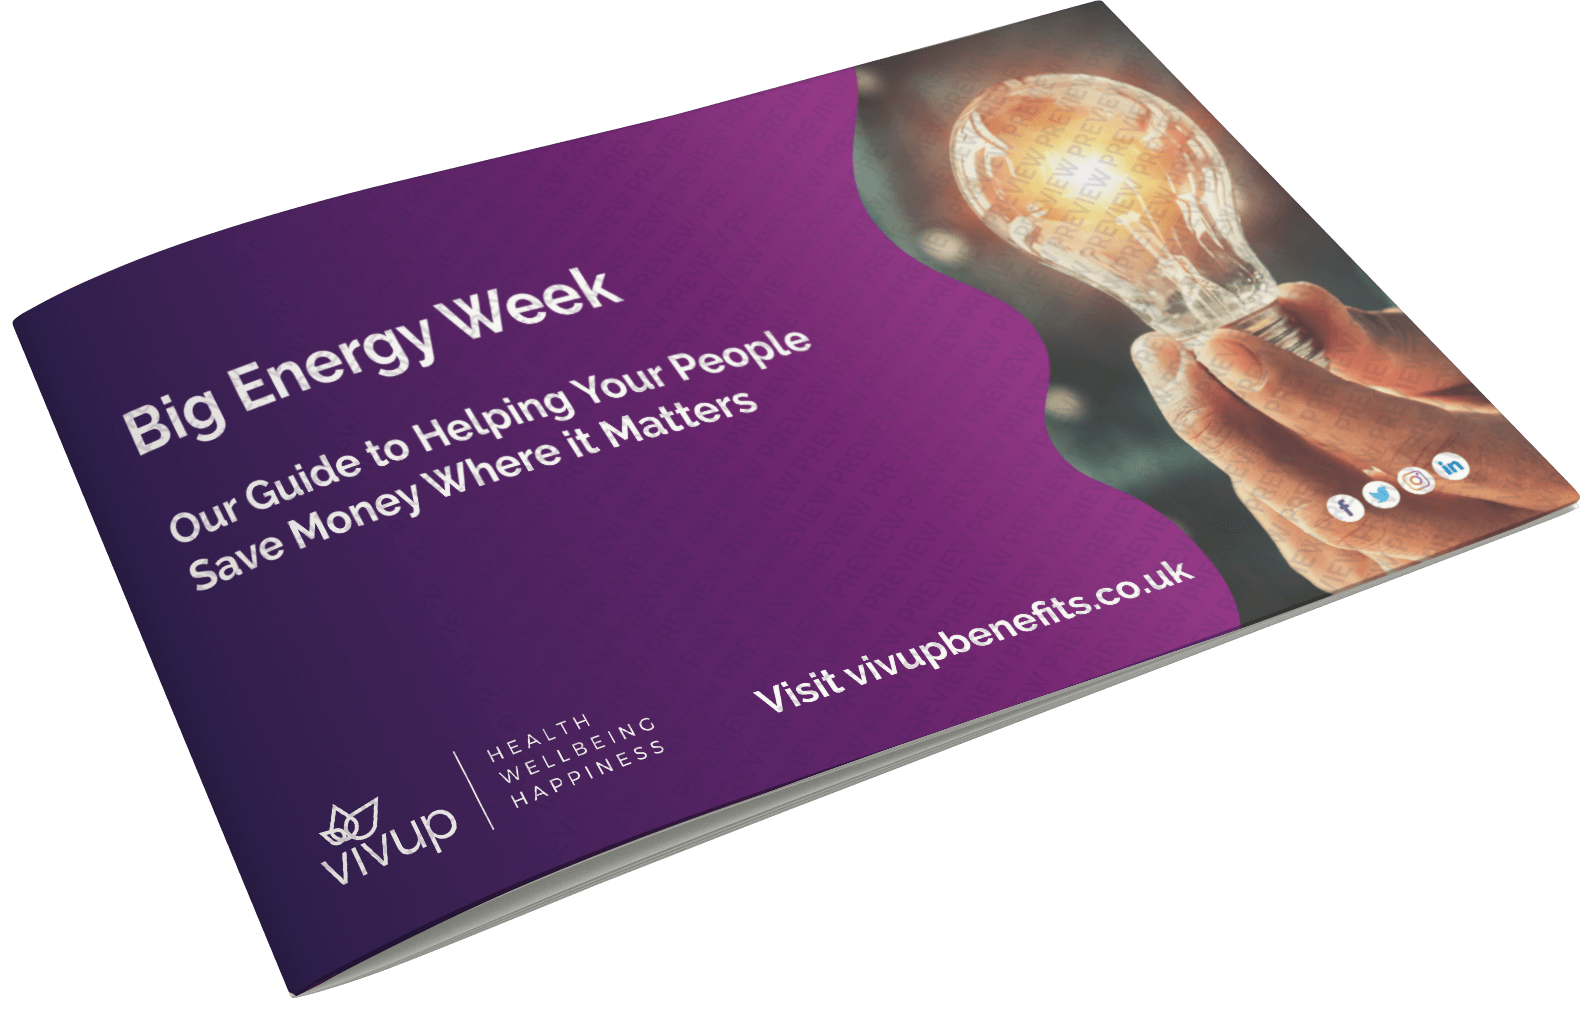 Vivup Big Energy Week Brochure